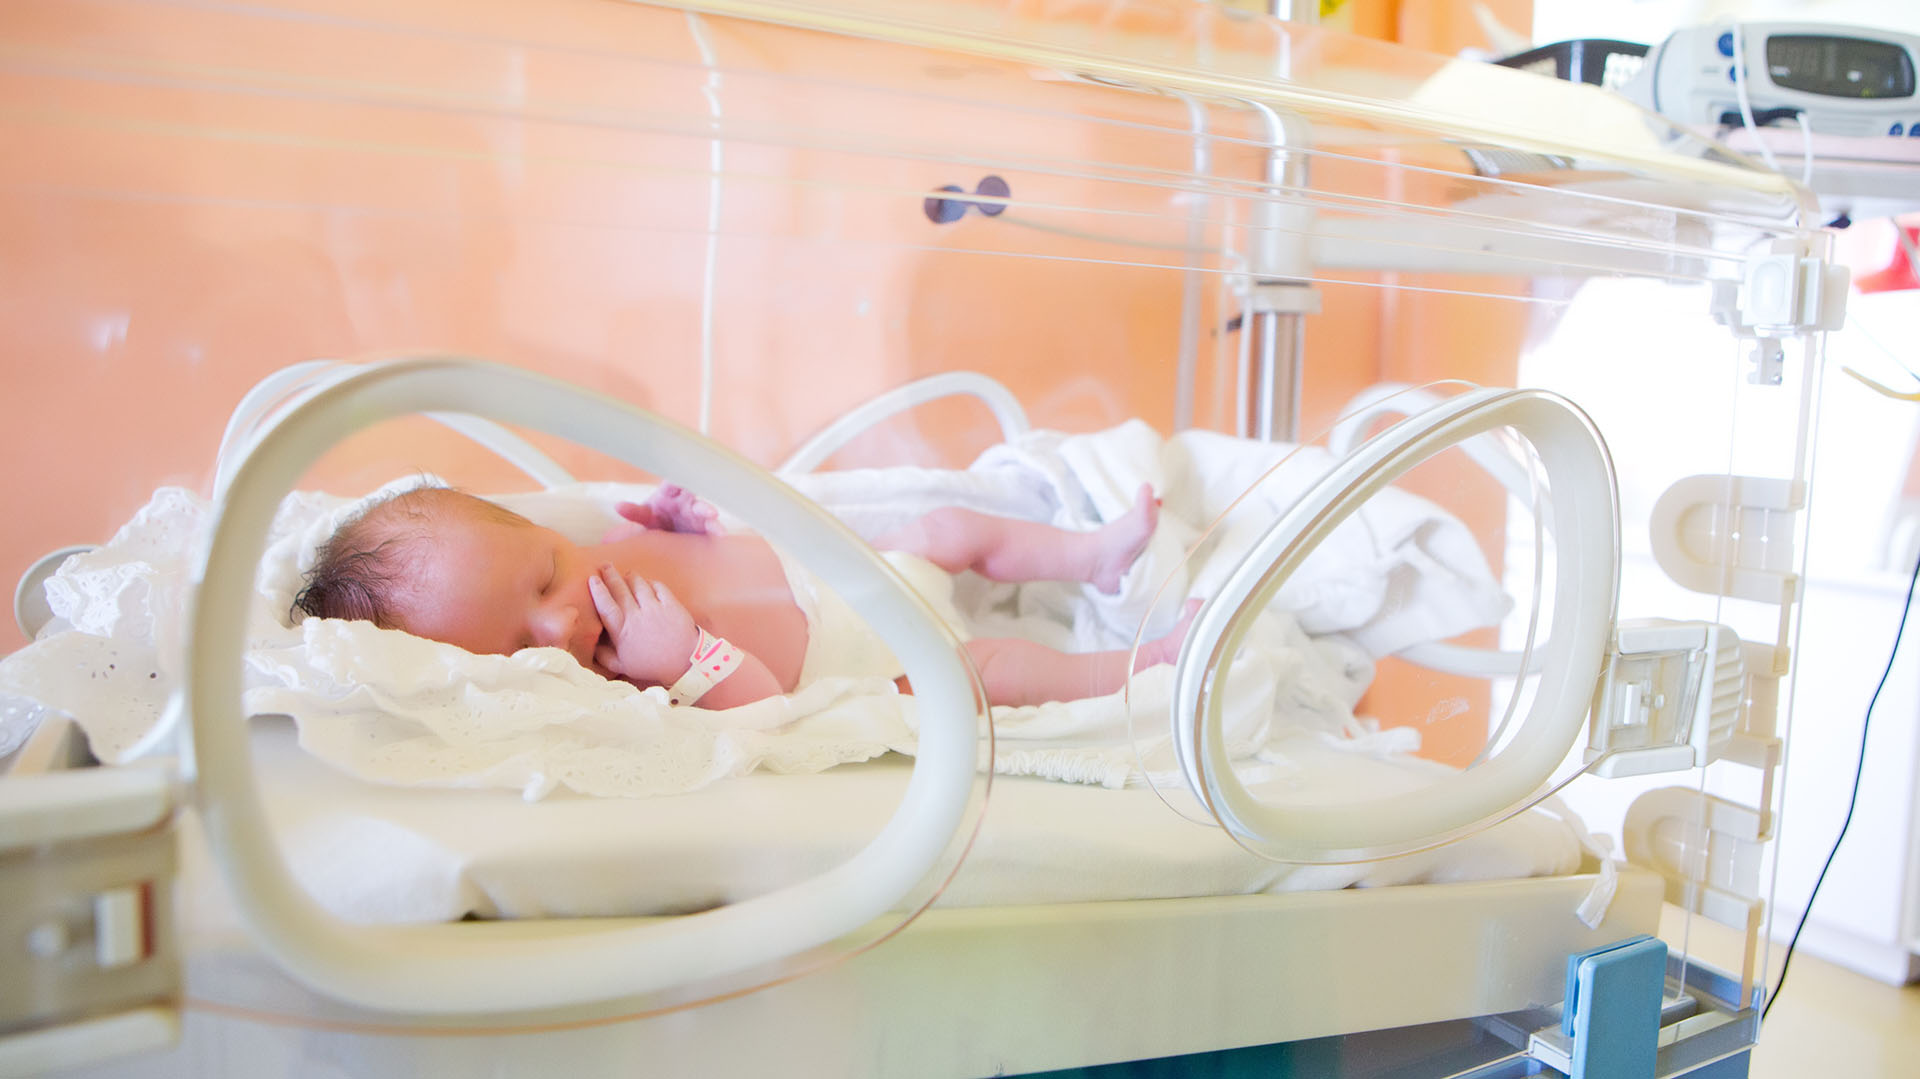 En los bebés, mejora el control de la temperatura, la estabilidad fisiológica y el progreso de peso; y en las madres, aumenta la producción de leche y disminuye el estrés que genera el ambiente de la terapia neonatal